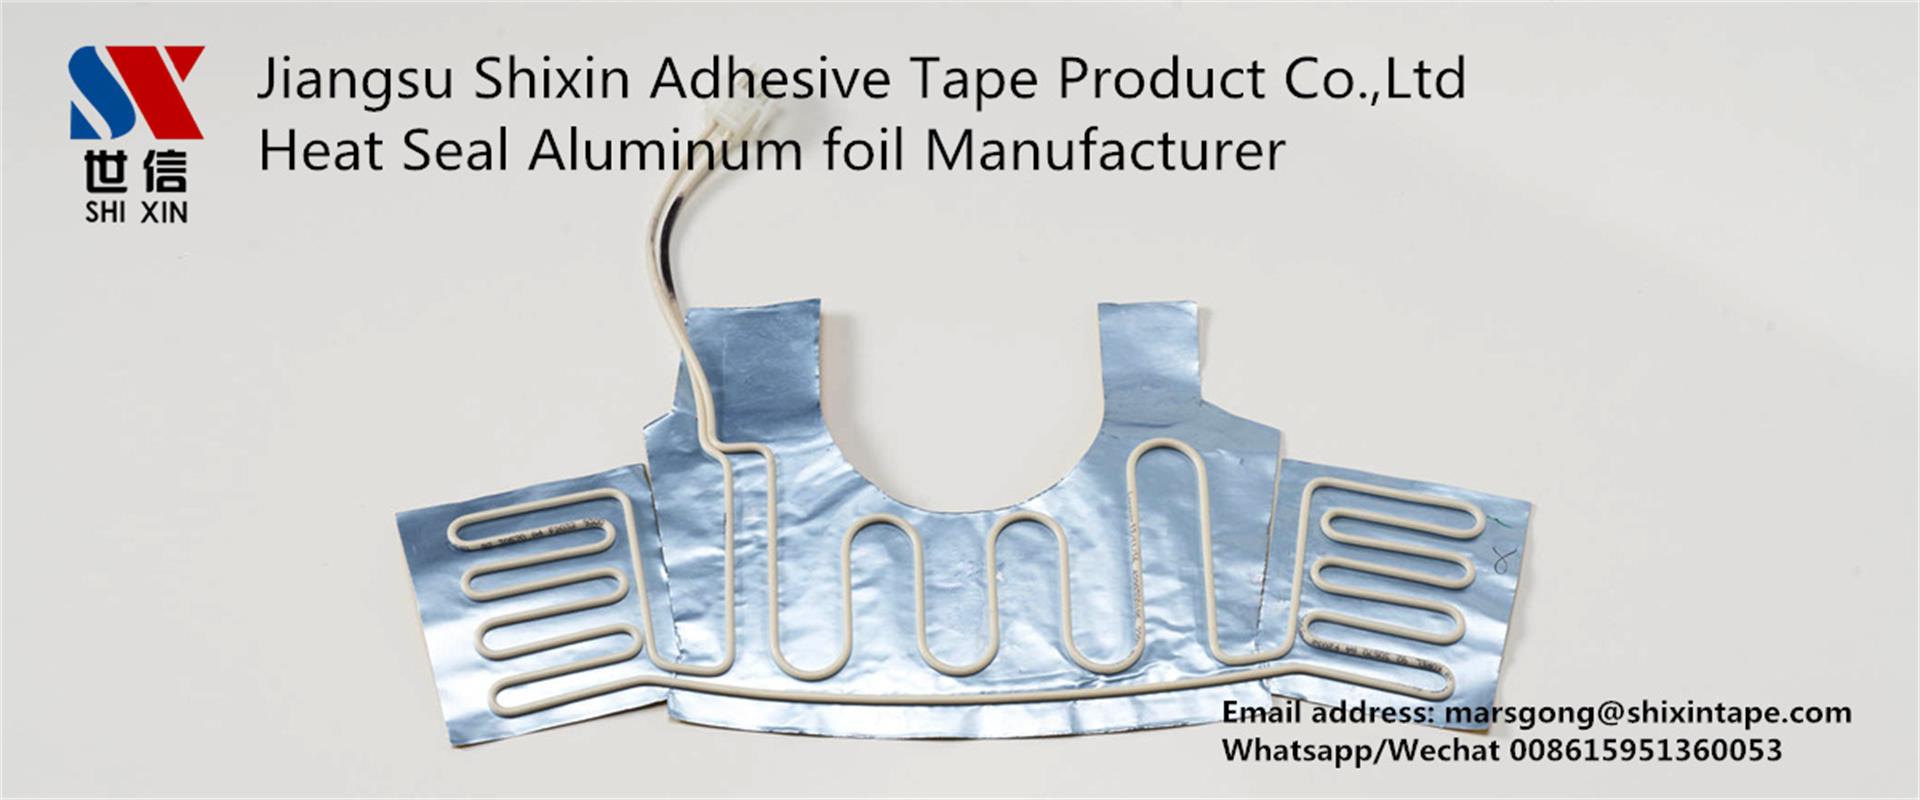 Heat seal aluminum foil tape ( aluminum foil heater)